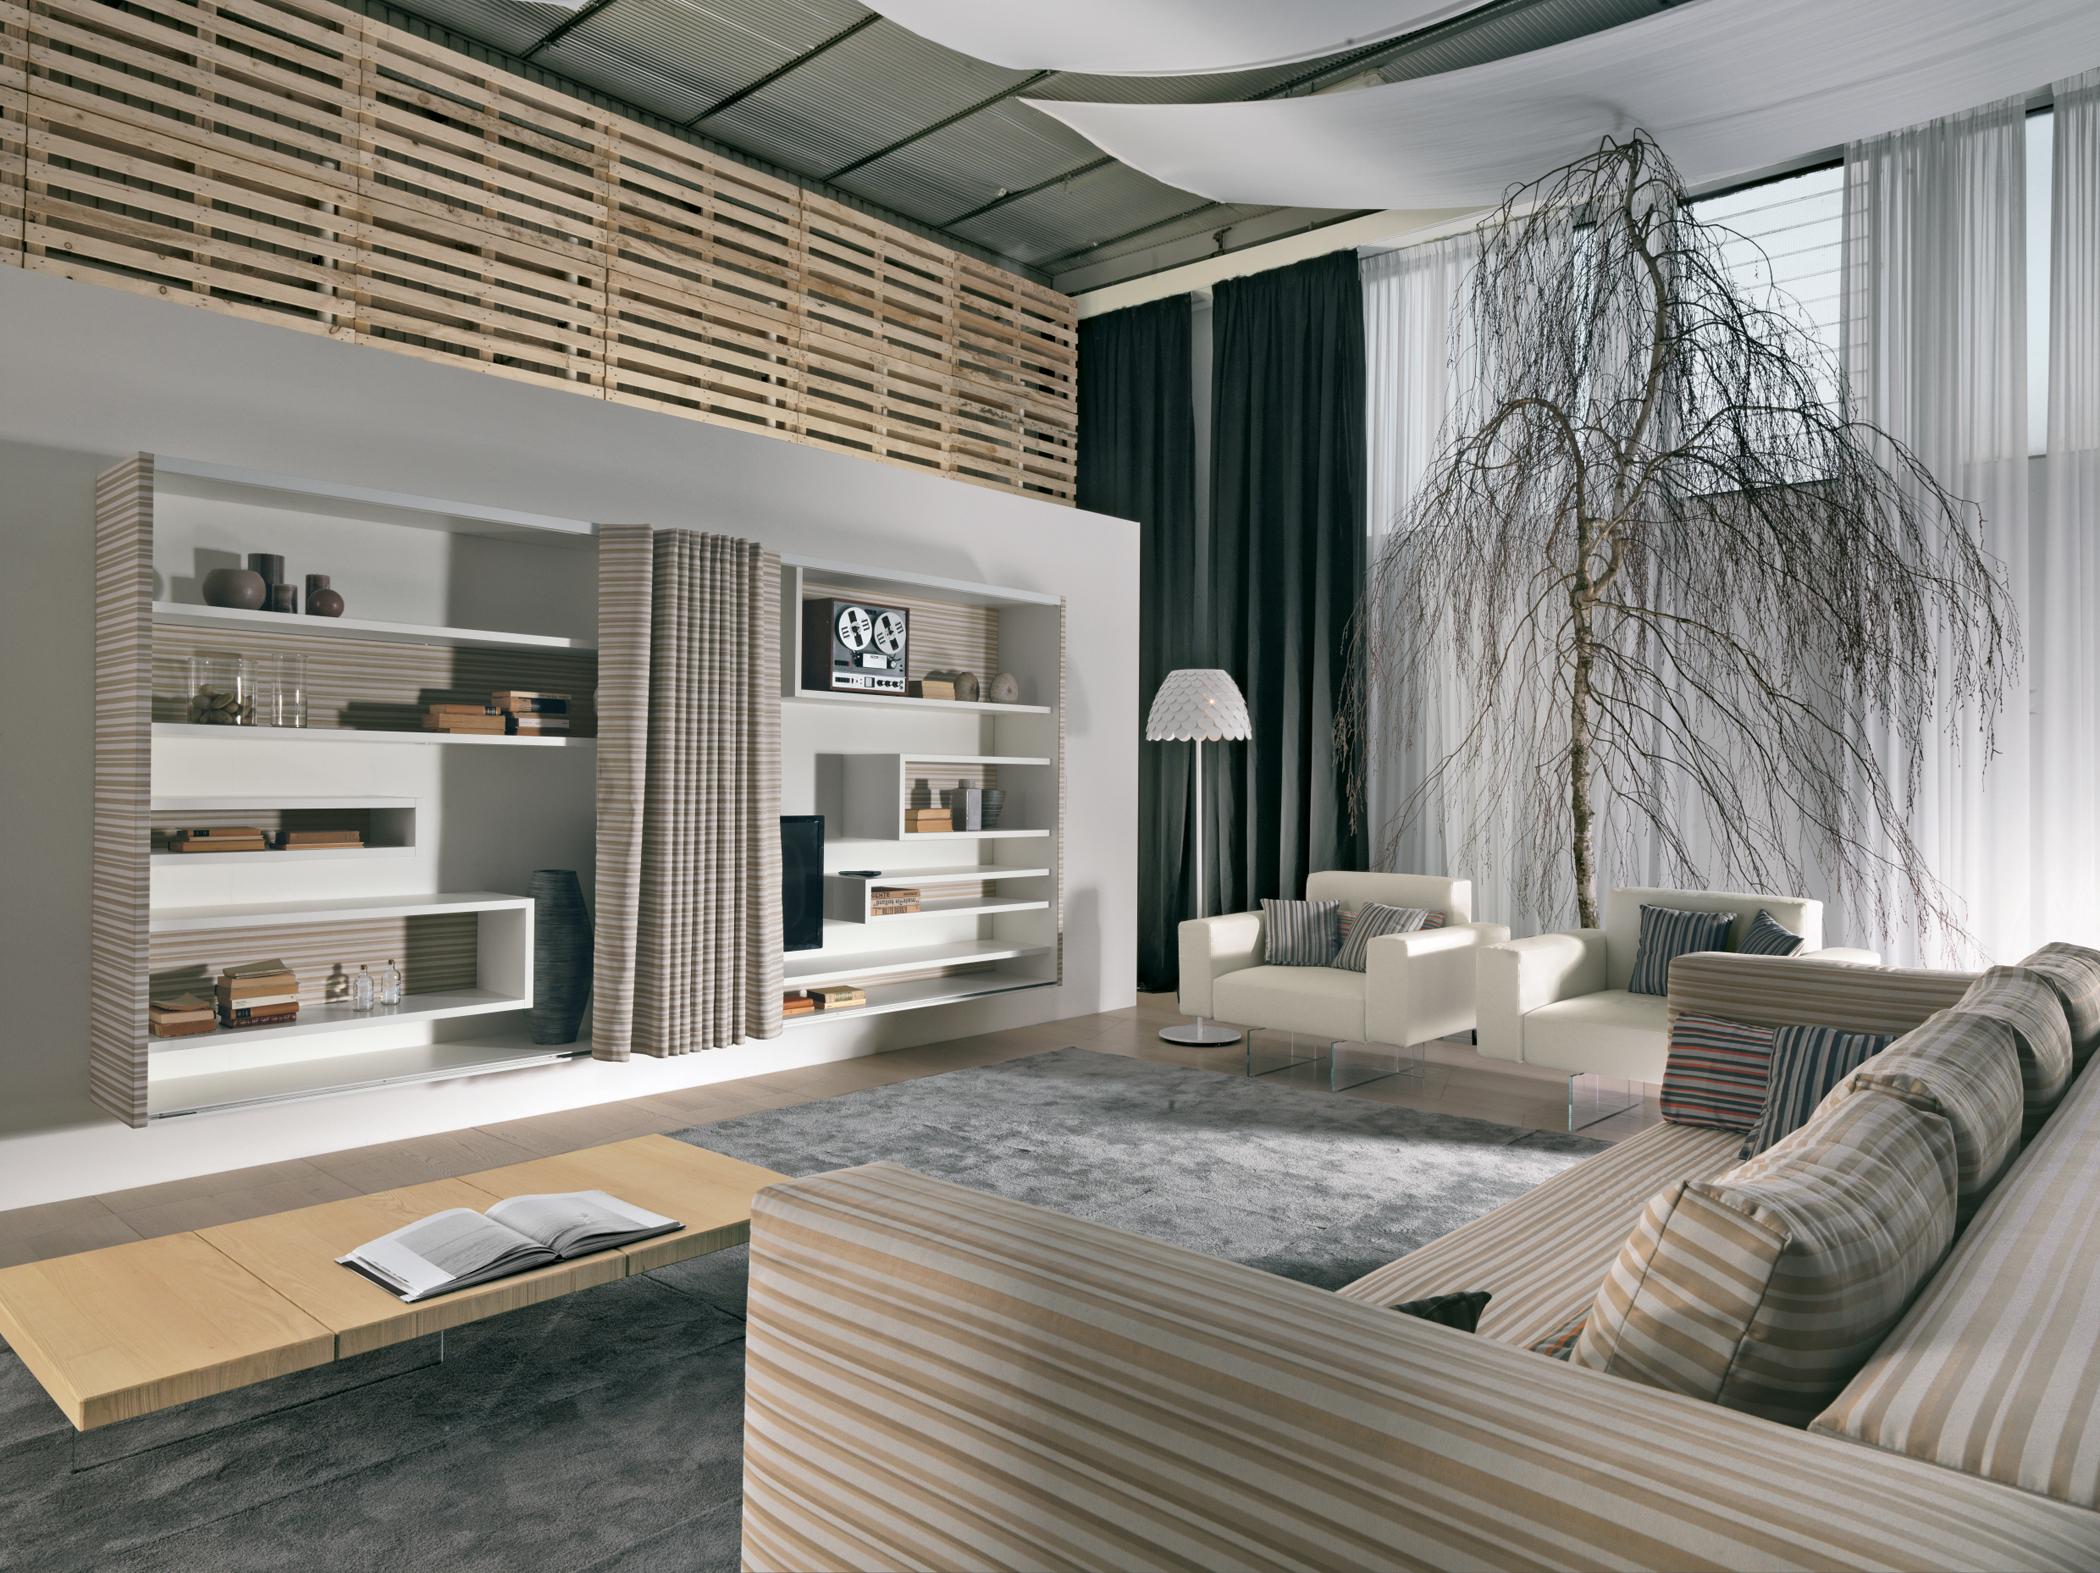 Wohnzimmer in natürlicher Baum-Optik #regalsystem #holzverkleidung #sofa #zimmerpflanze ©Lago